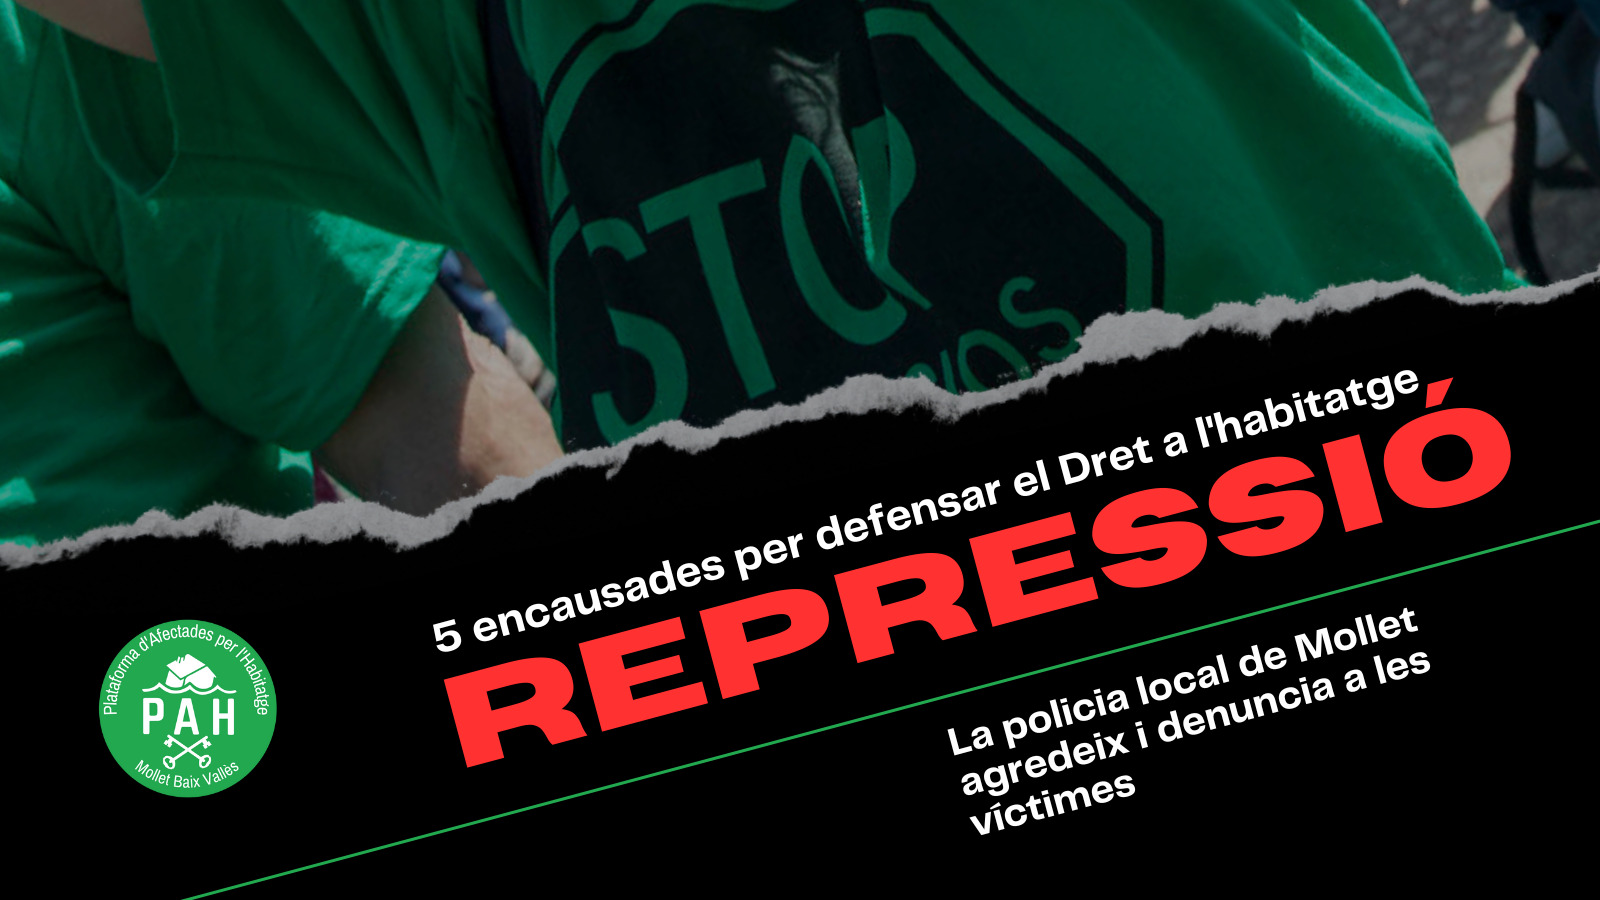 Read more about the article La policía municipal de Mollet denuncia a 5 miembros de la PAH